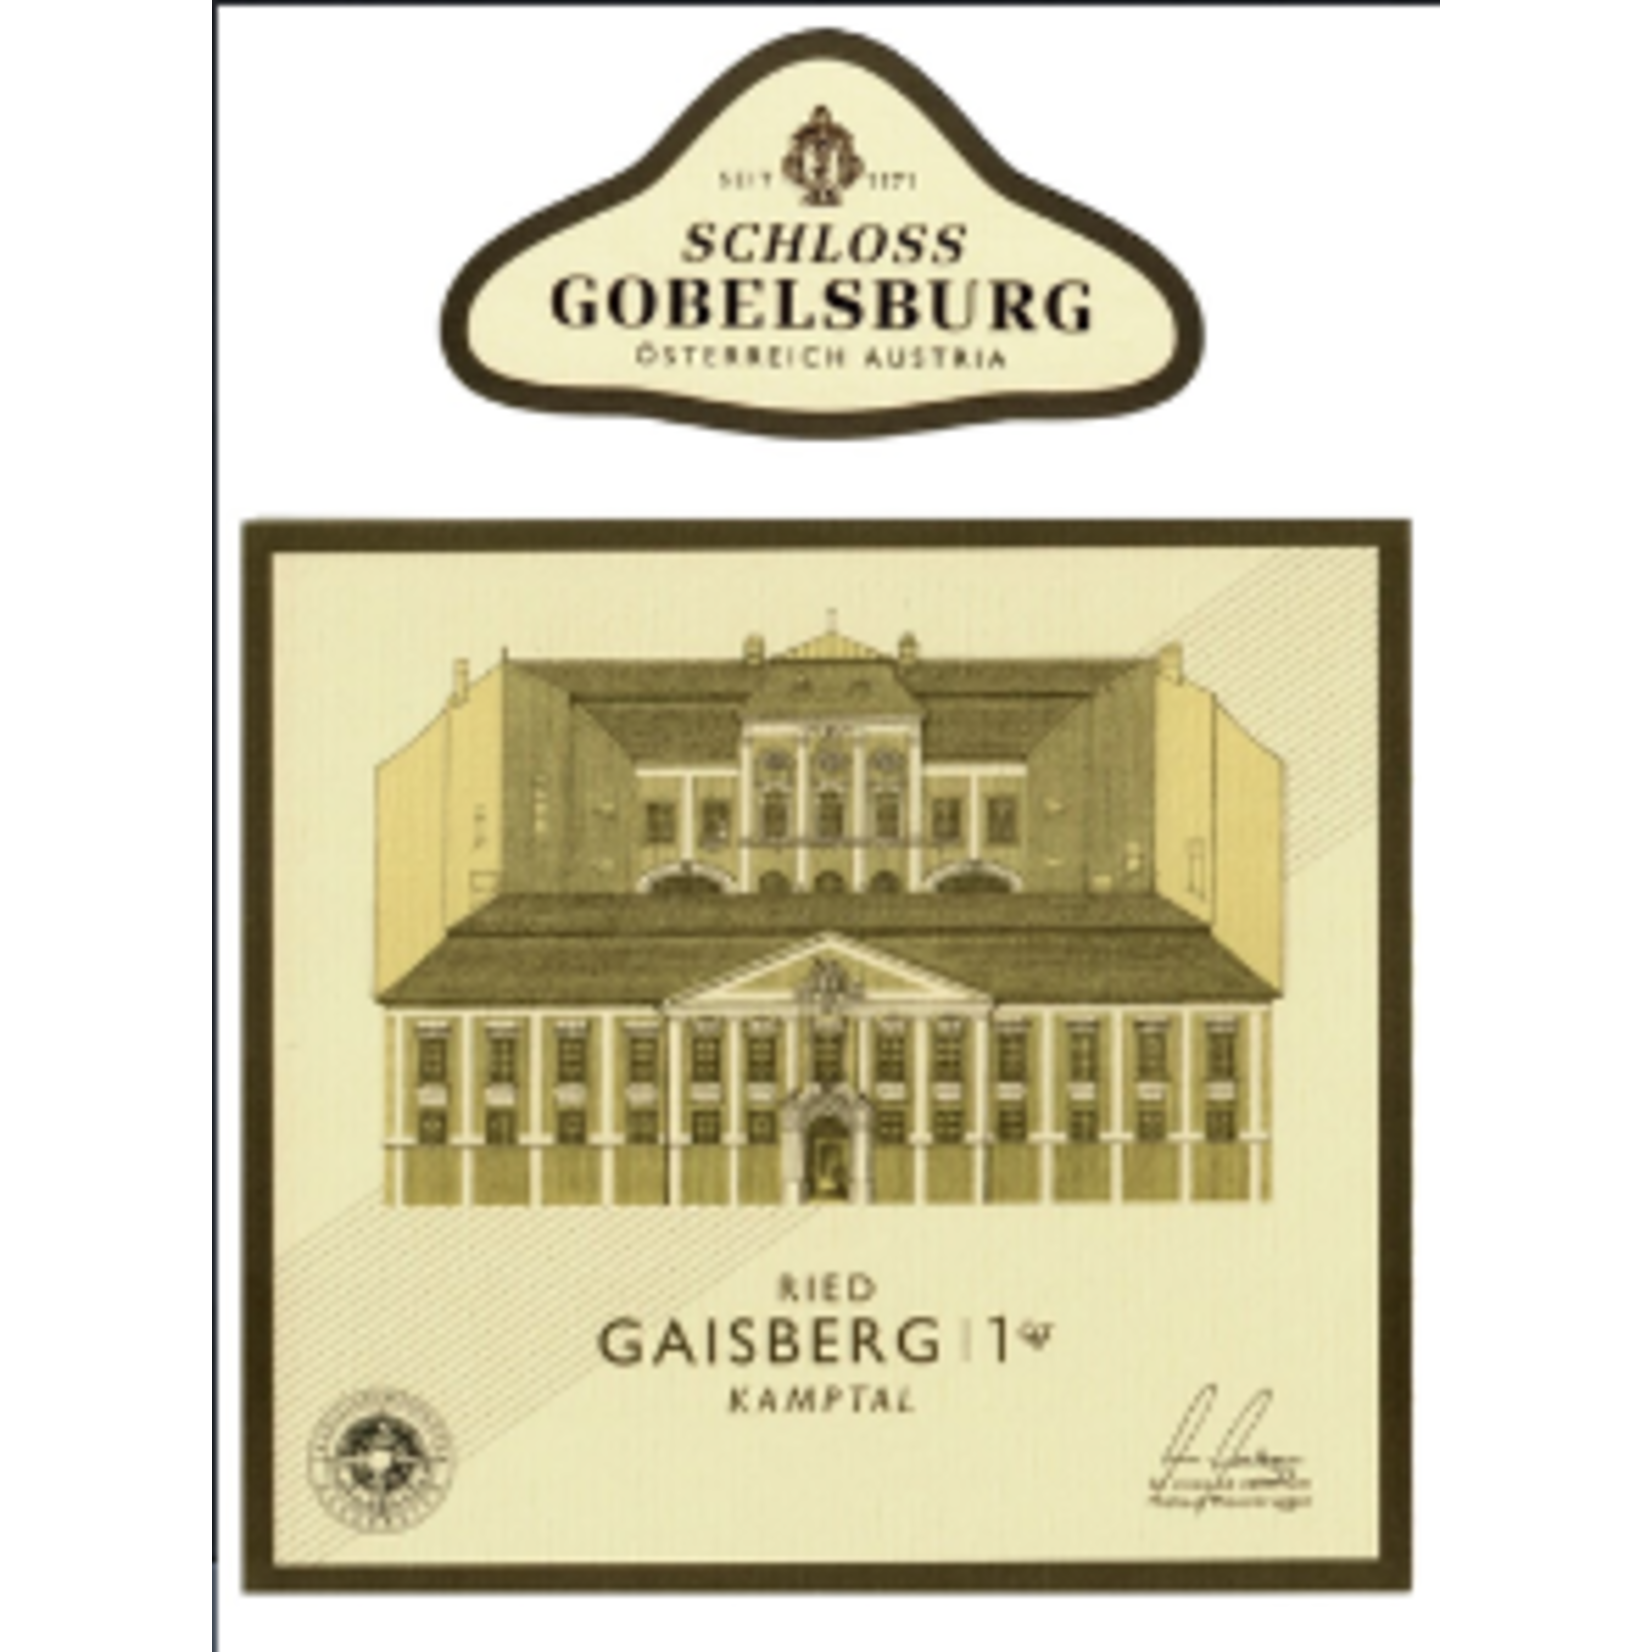 Schloss Gobelsburg Schloss Gobelsburg Grüner Veltliner Ried Lamm Erste Lage ÖTW 2018 Kamptal, Austria